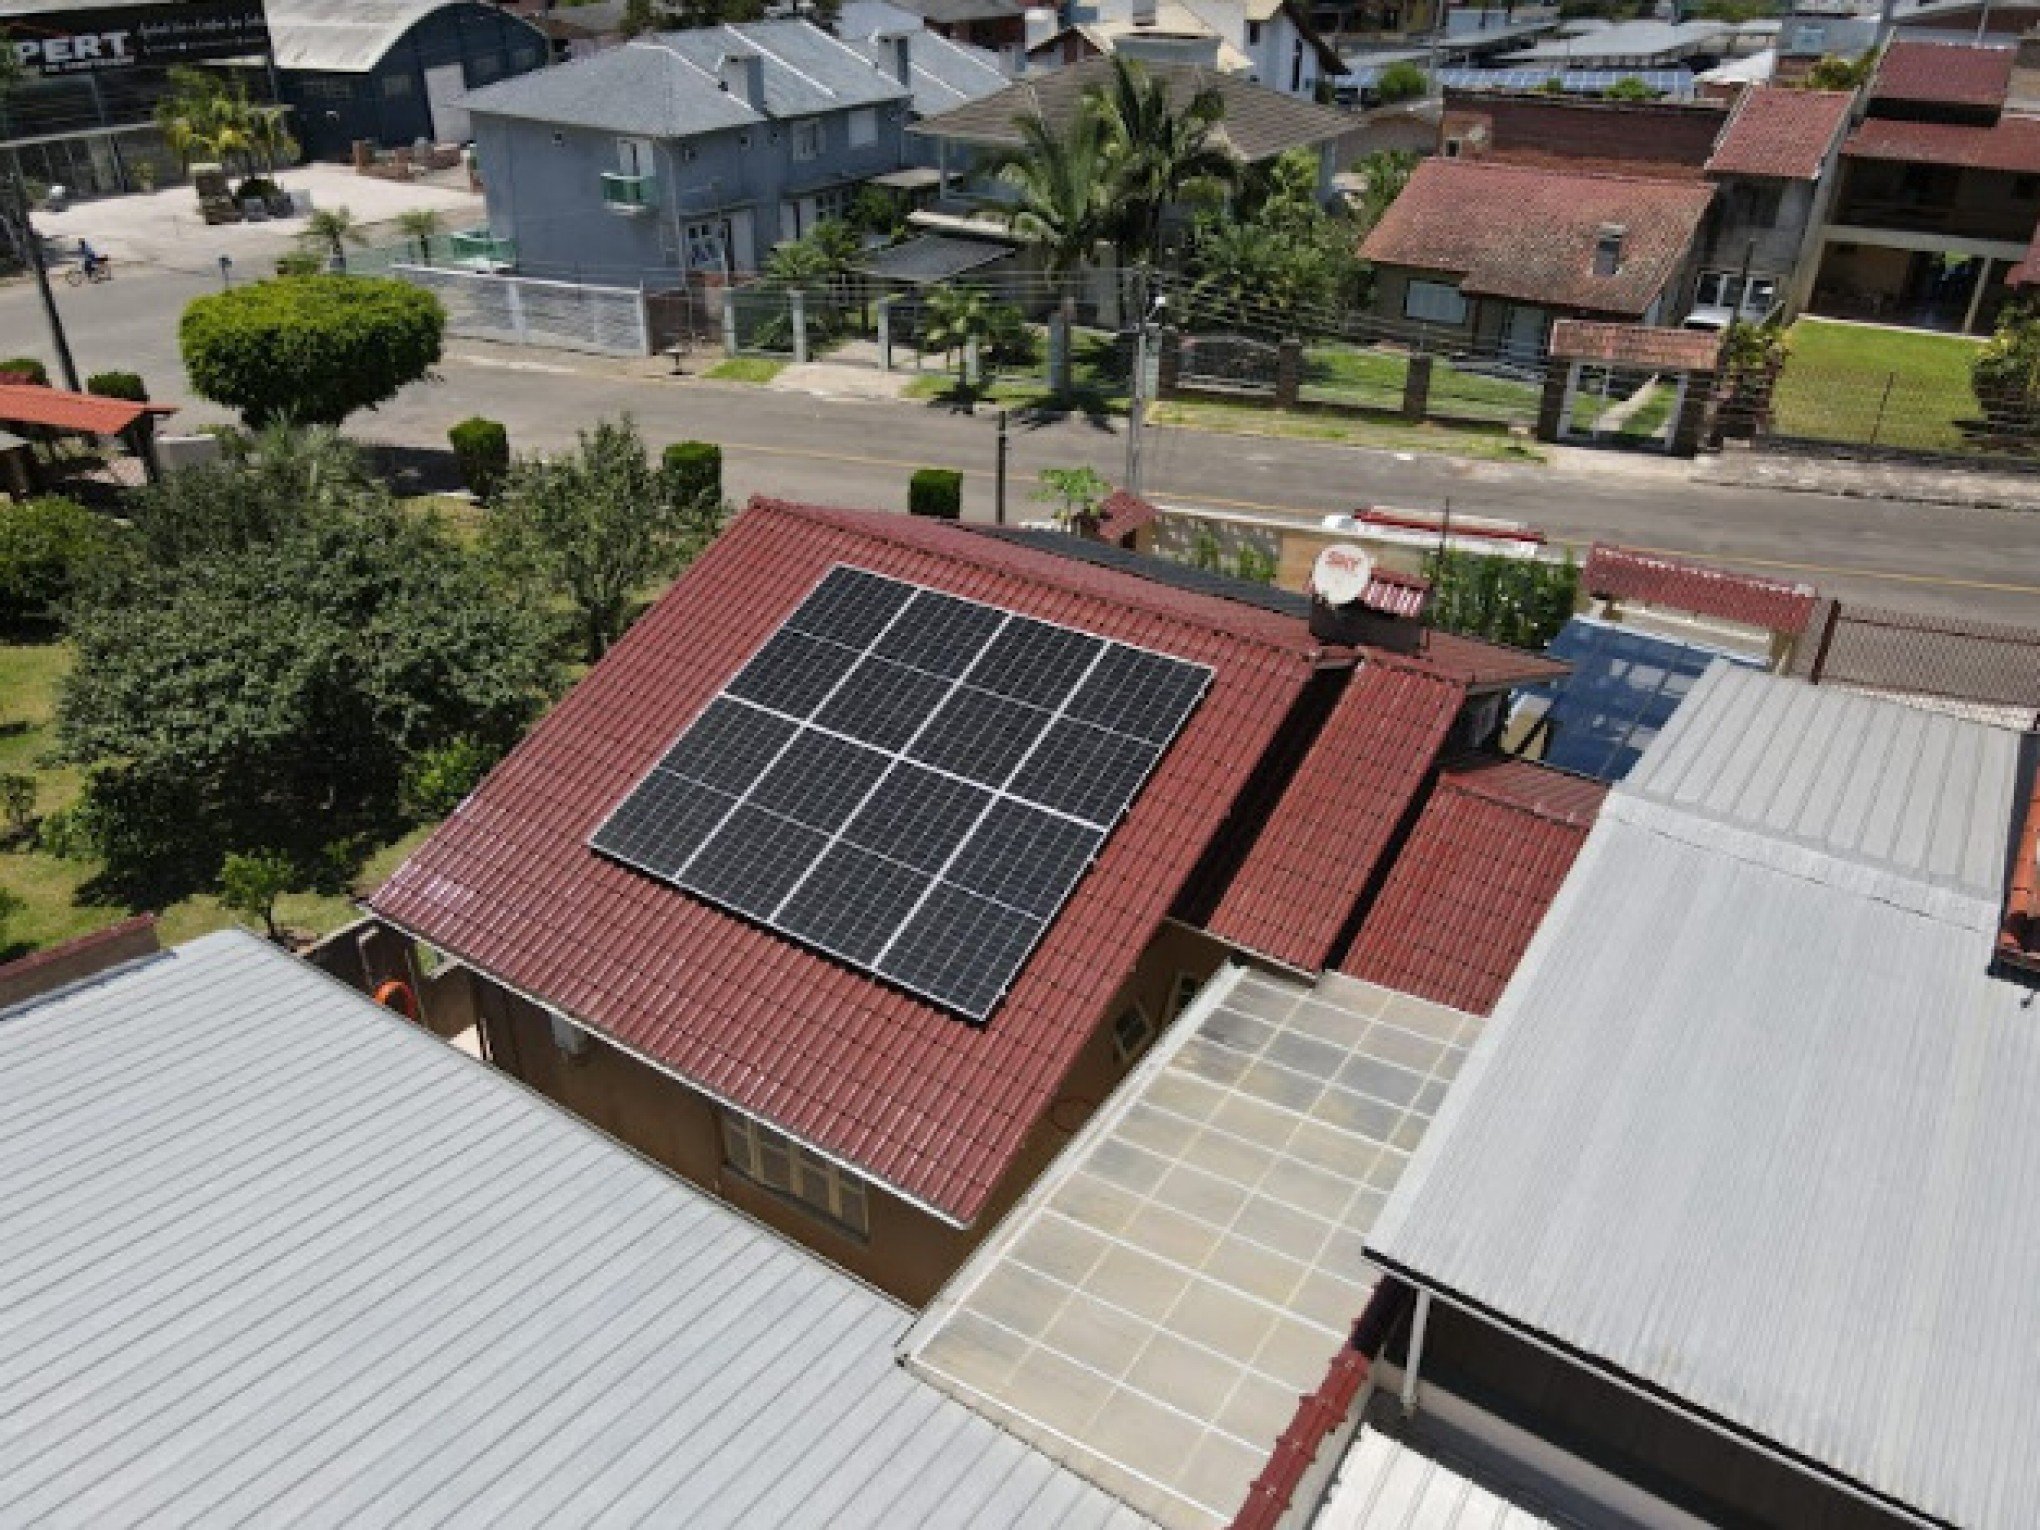 Consumidores investem em energia solar antes que lei de 'taxação do sol'  entre em vigor - Região - Jornal NH